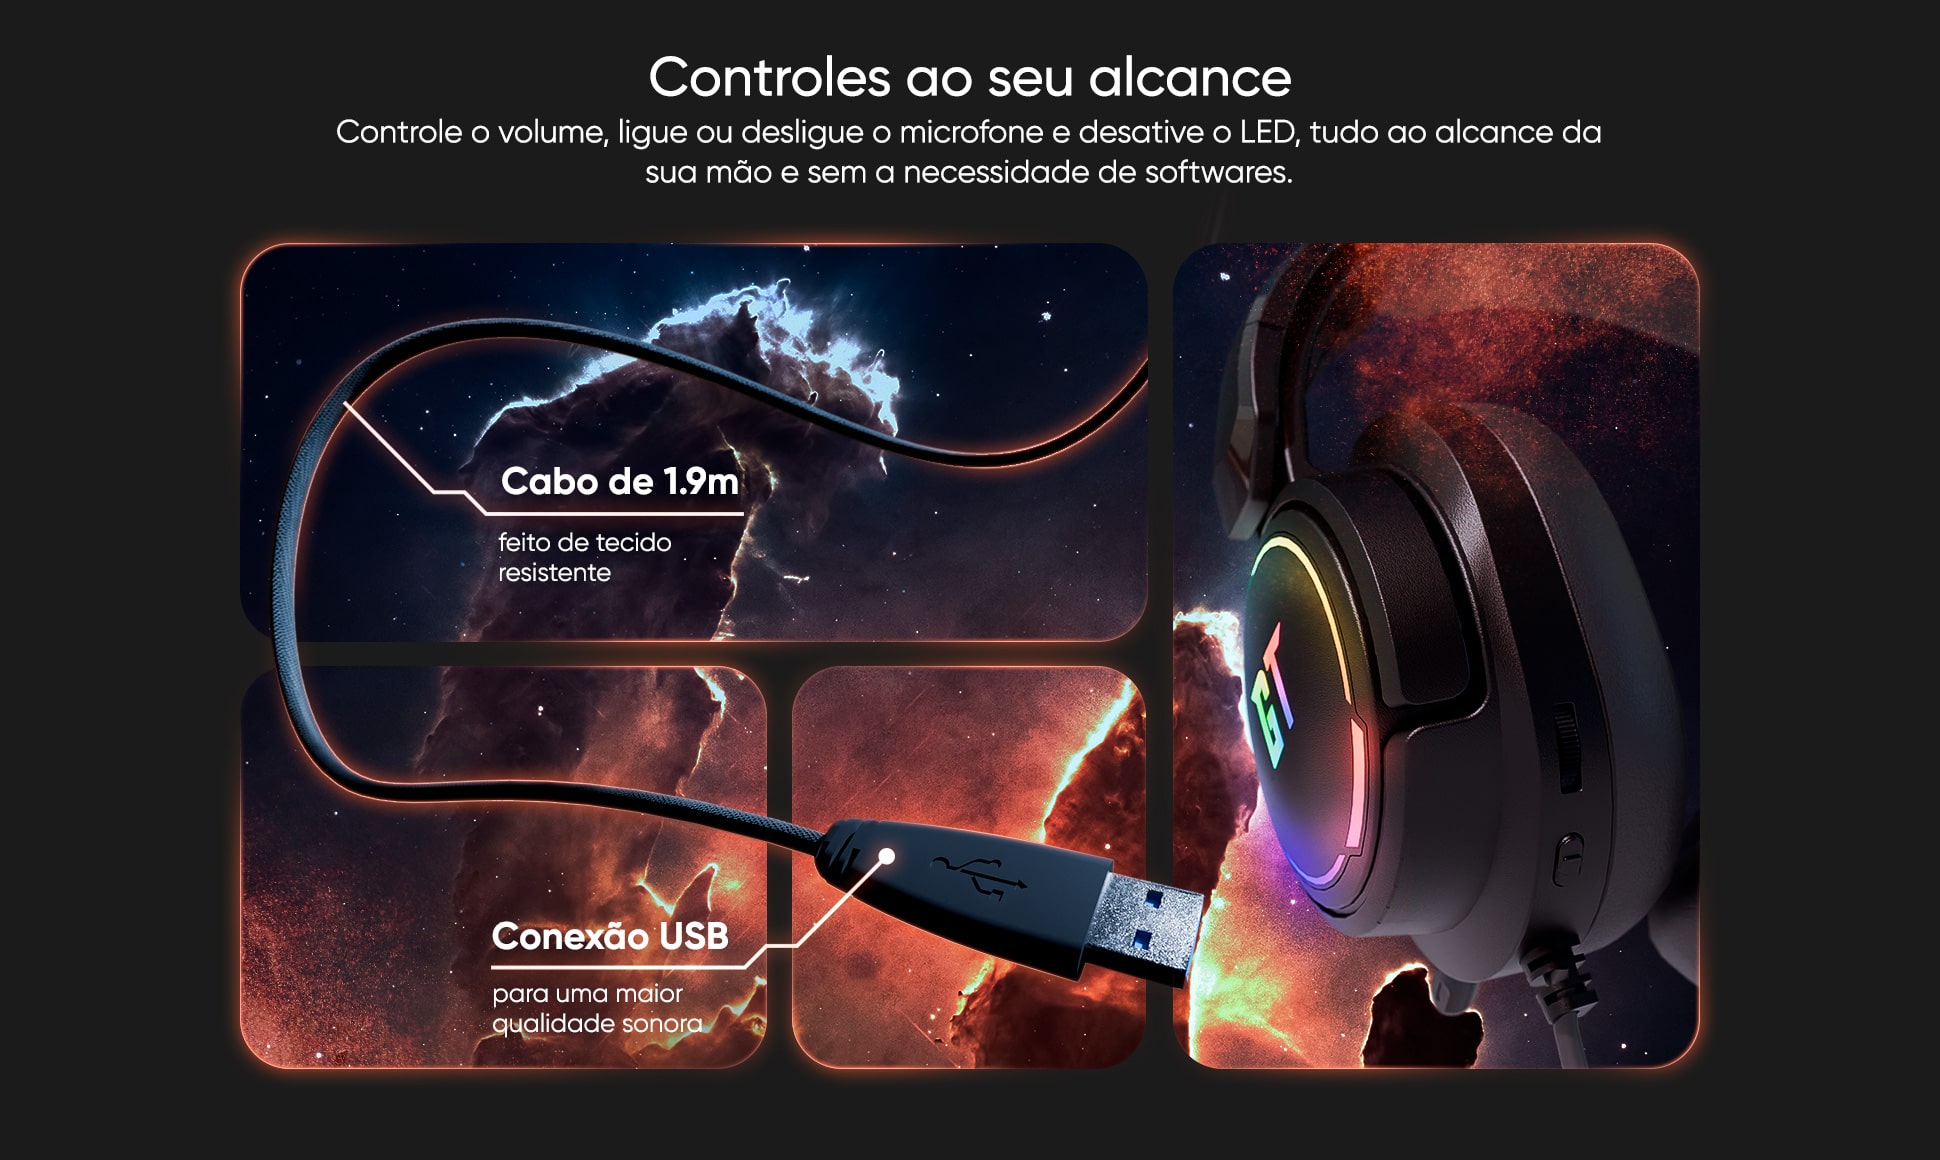 Headset Gamer Goldentec GT Nebula